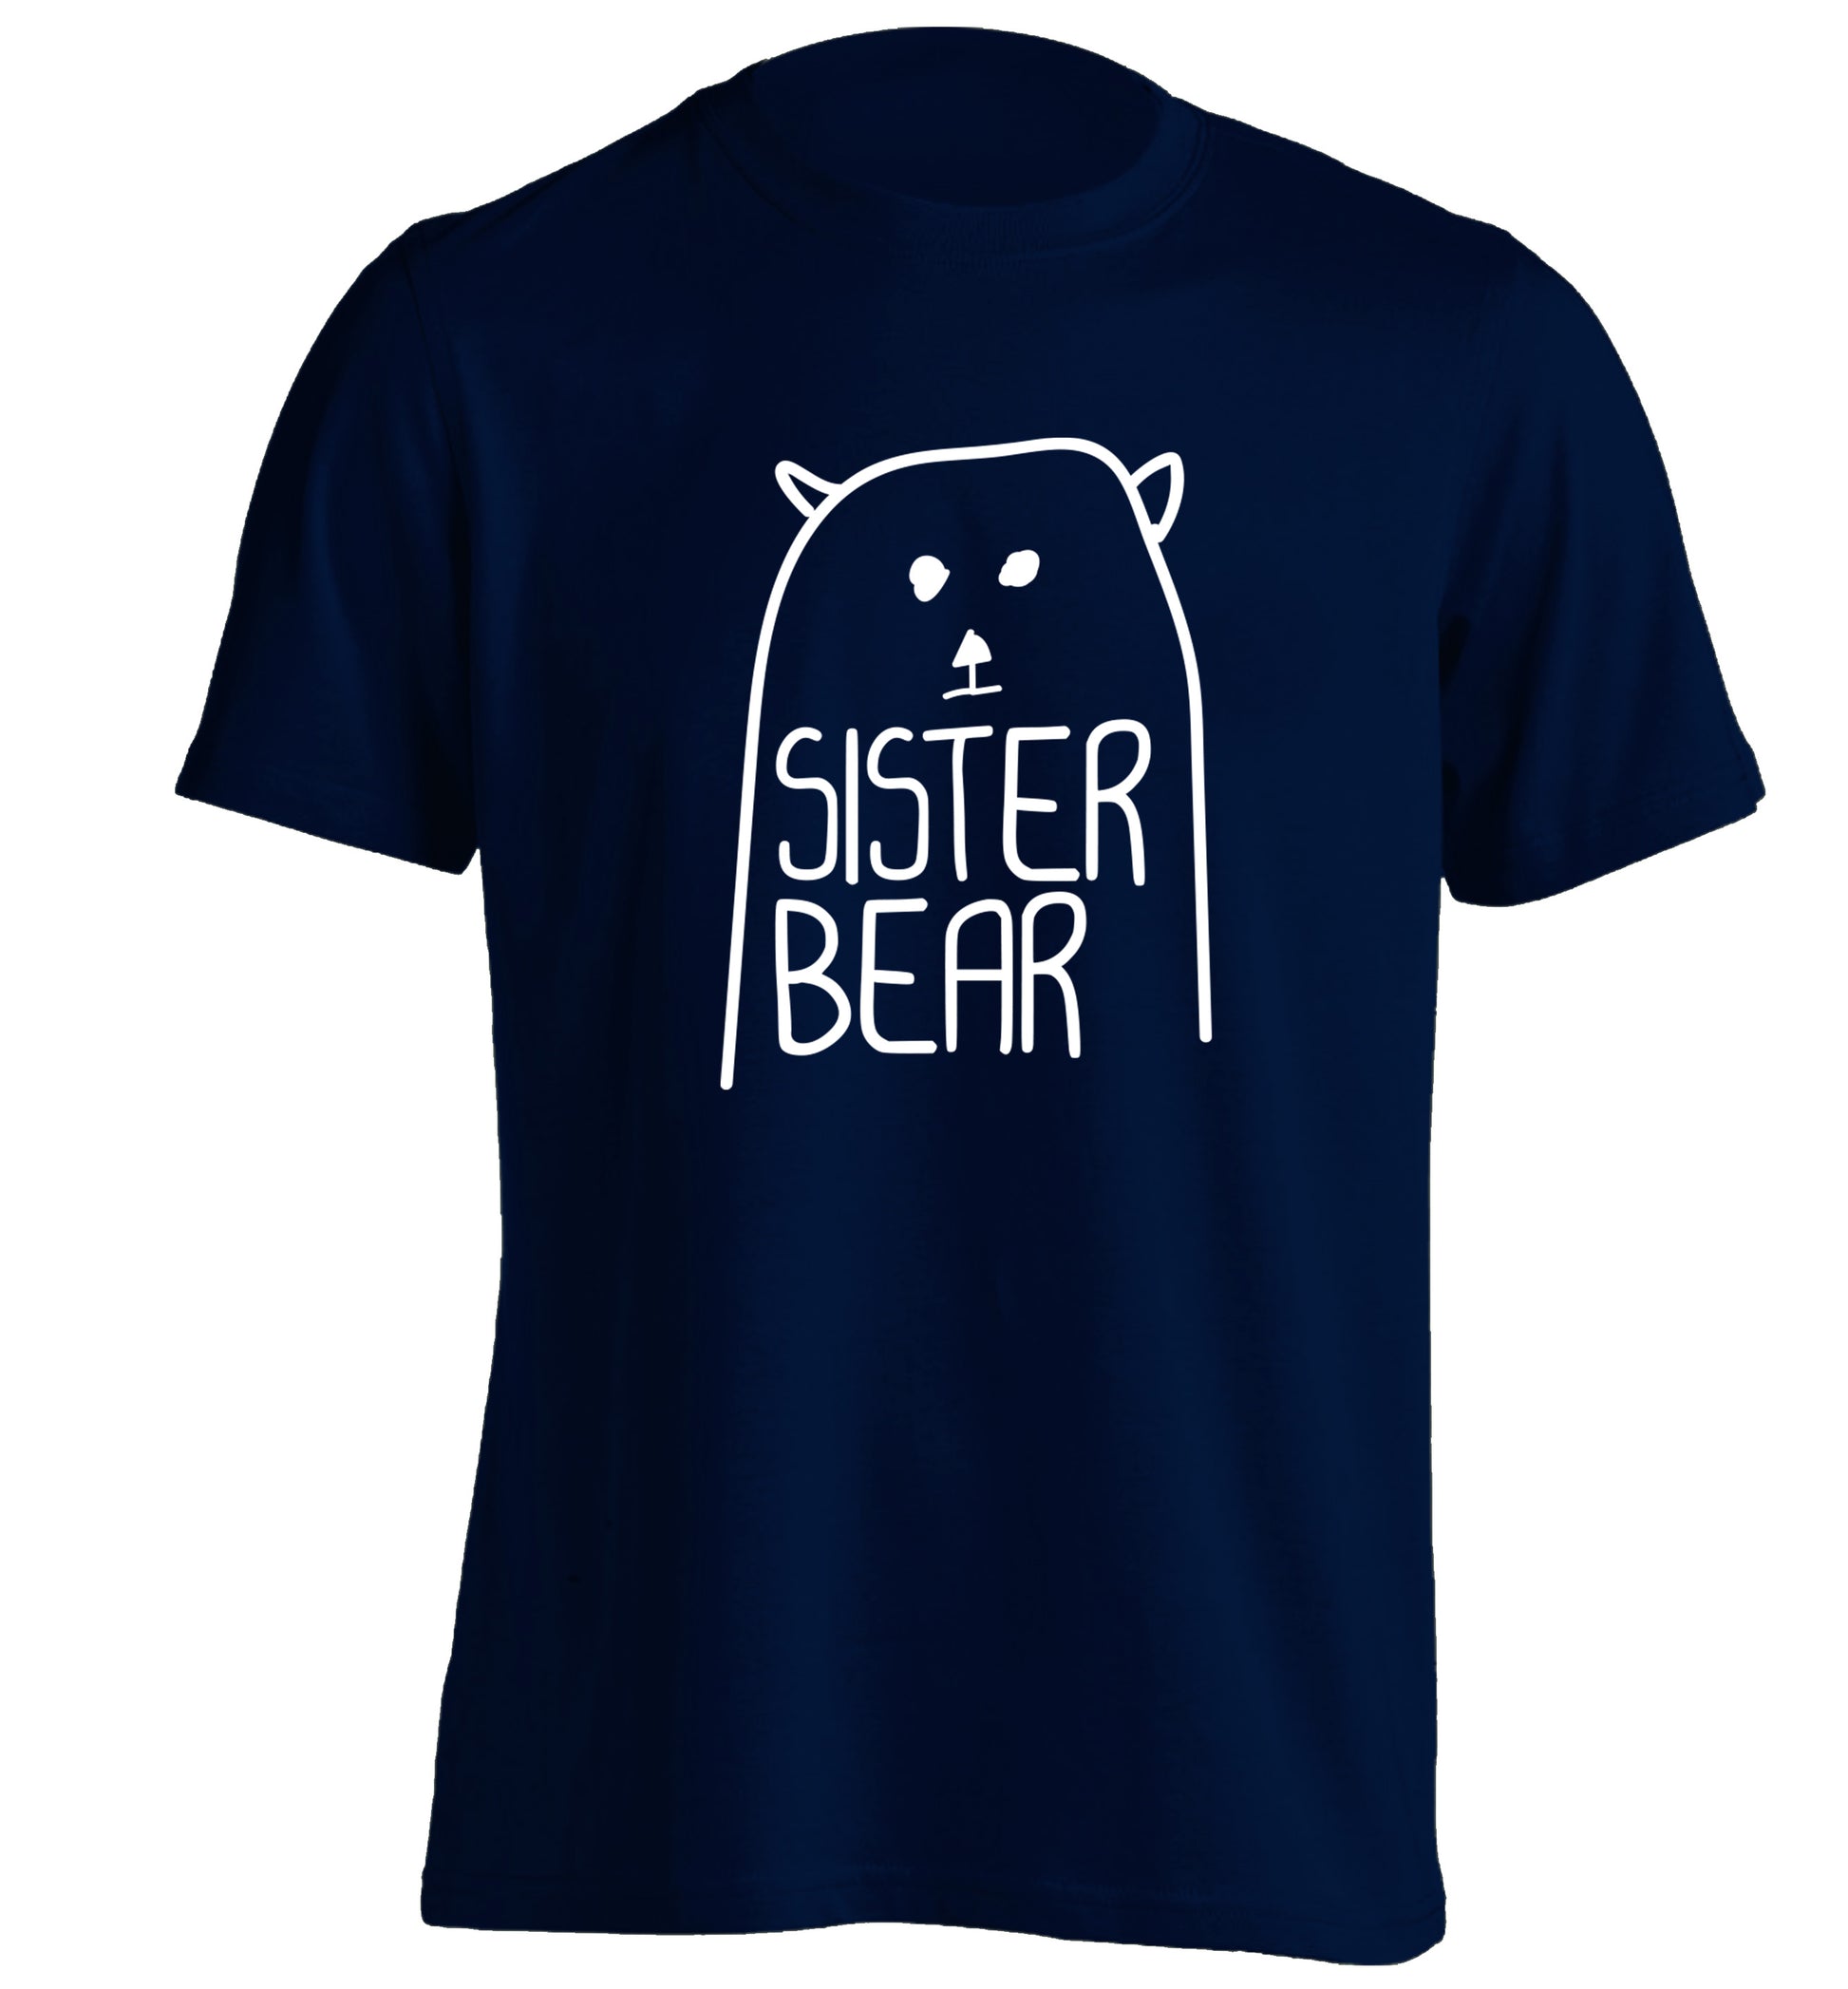 Sister bear adults unisex navy Tshirt 2XL